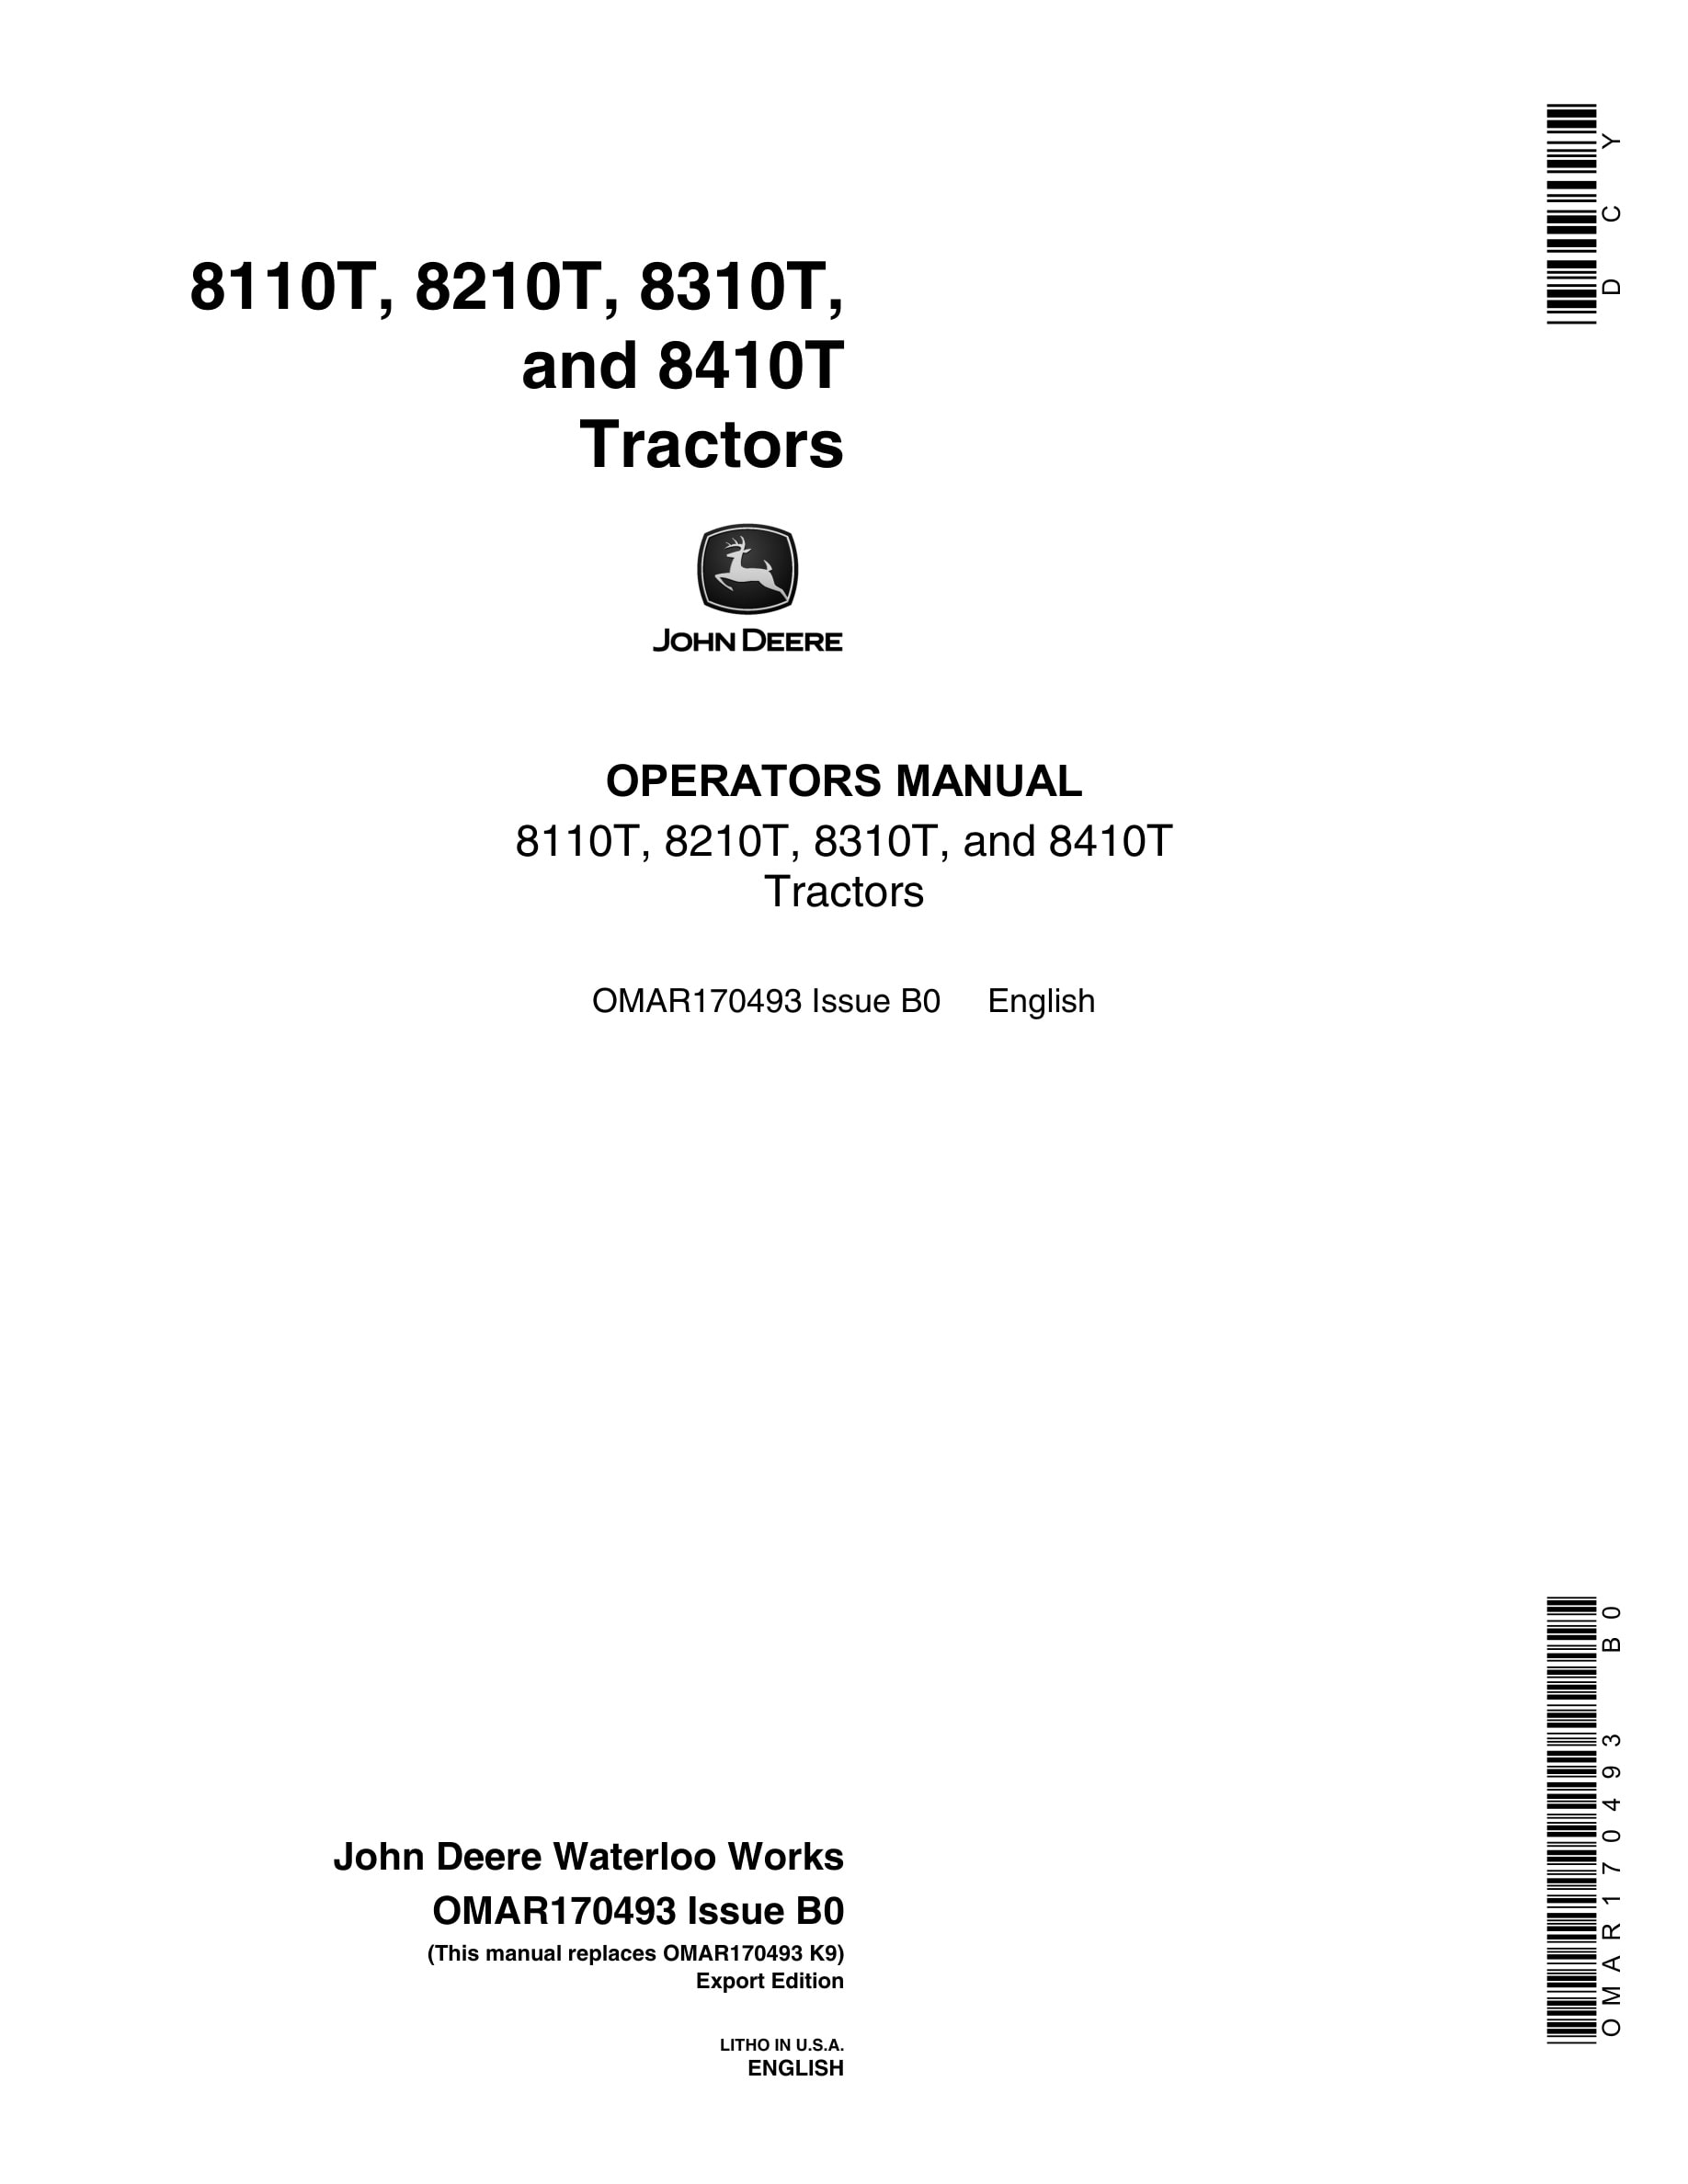 John Deere 8110t, 8210t, 8310t, And 8410t Tractors Operator Manuals OMAR170493-1